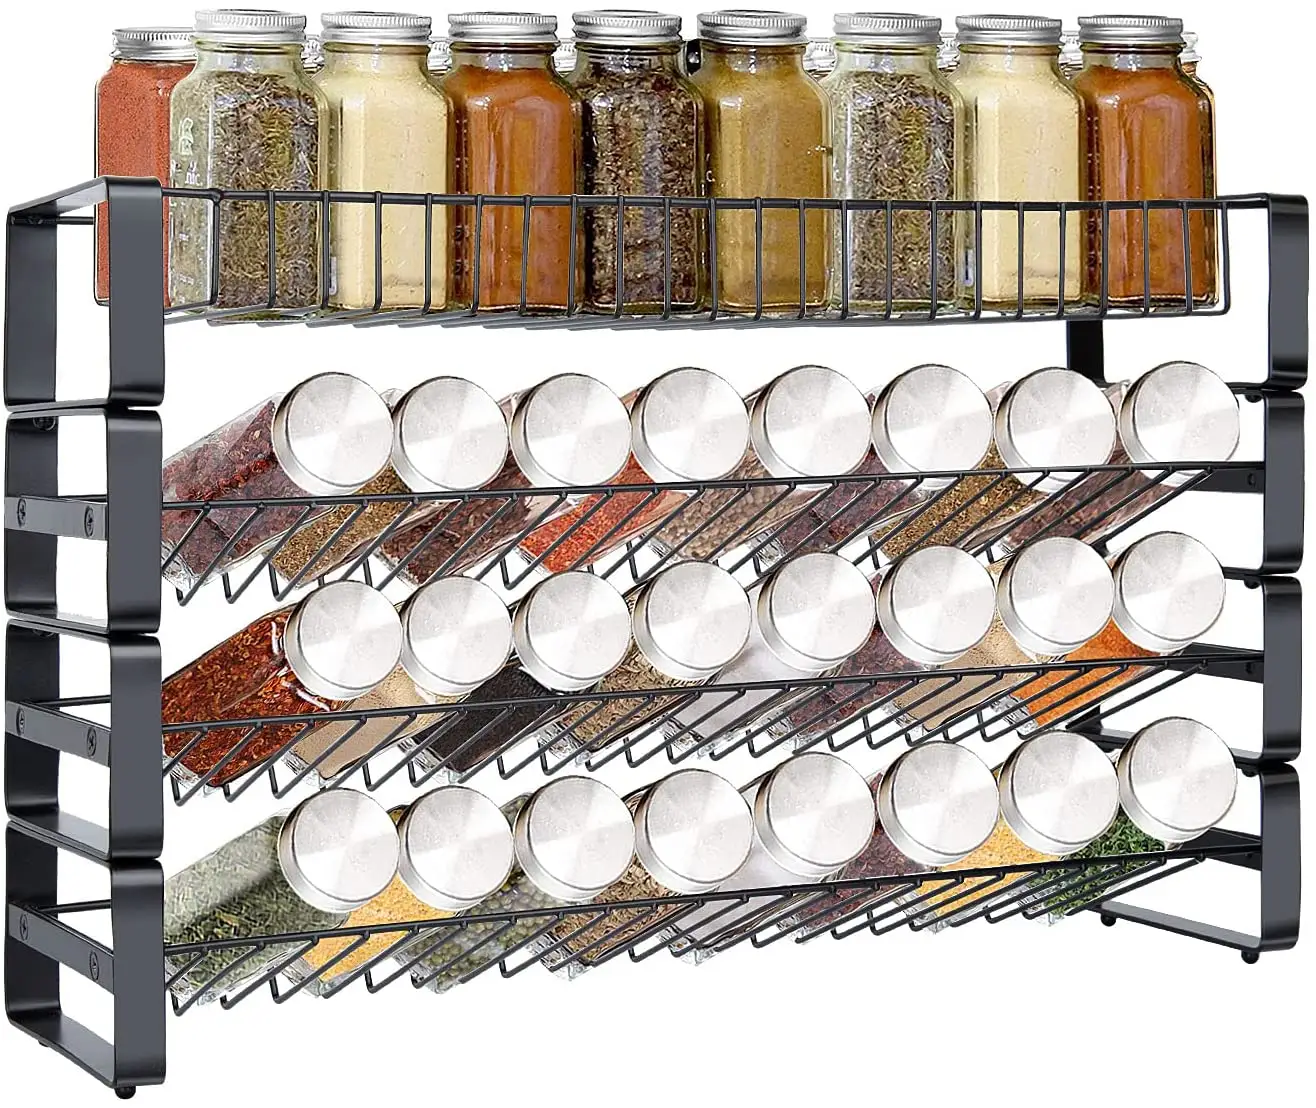 4 Tier Metalldraht Verstellbarer Aufbewahrung halter für Küchen flaschen Jar Spice Rack Organizer